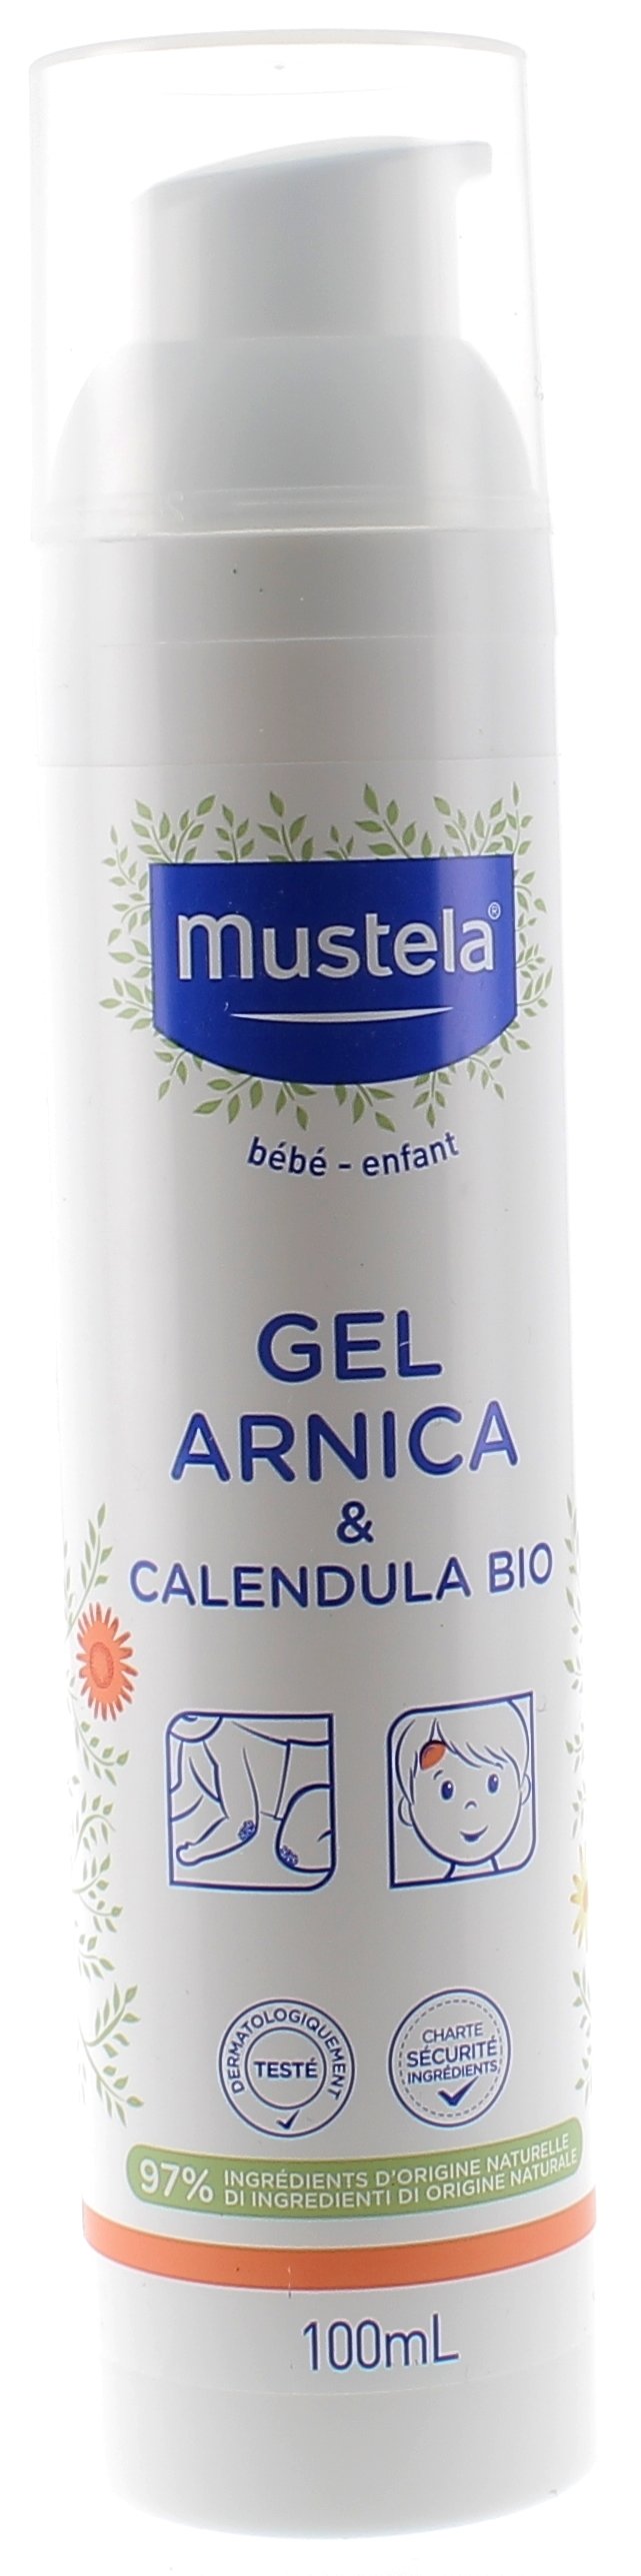 Gel Arnica - Protège Et Apaise - 96% D'Ingrédients D'Origine